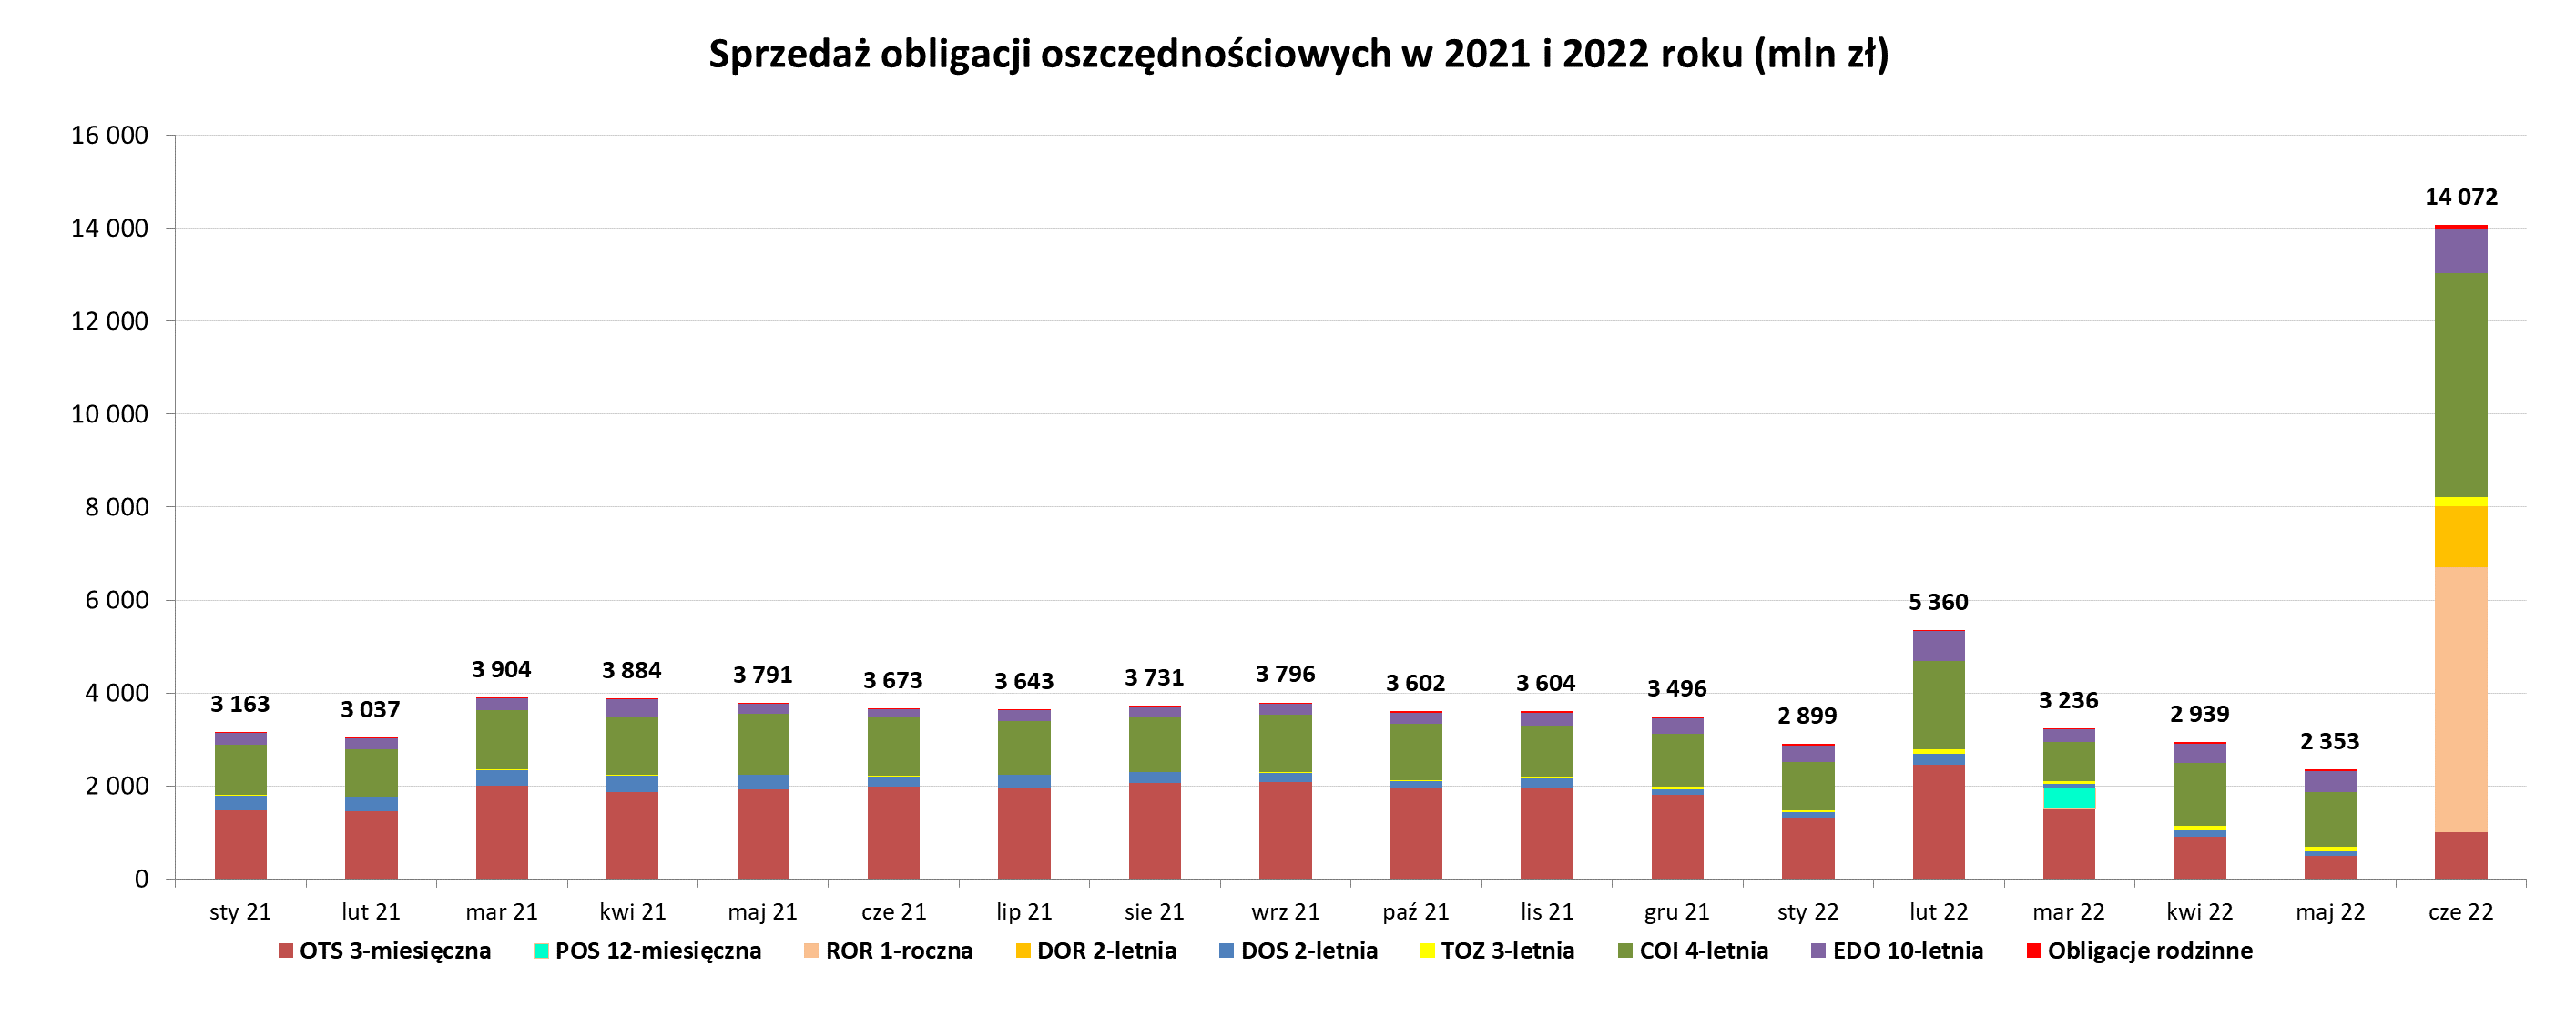 Wyniki sprzedaży obligacji oszczędnościowych w czerwcu - Grafika słupkowa przedstawiająca sprzedaż obligacji oszczędnościowych w 2021 i 2022 r (mln zł) - czerwiec 2022 r.